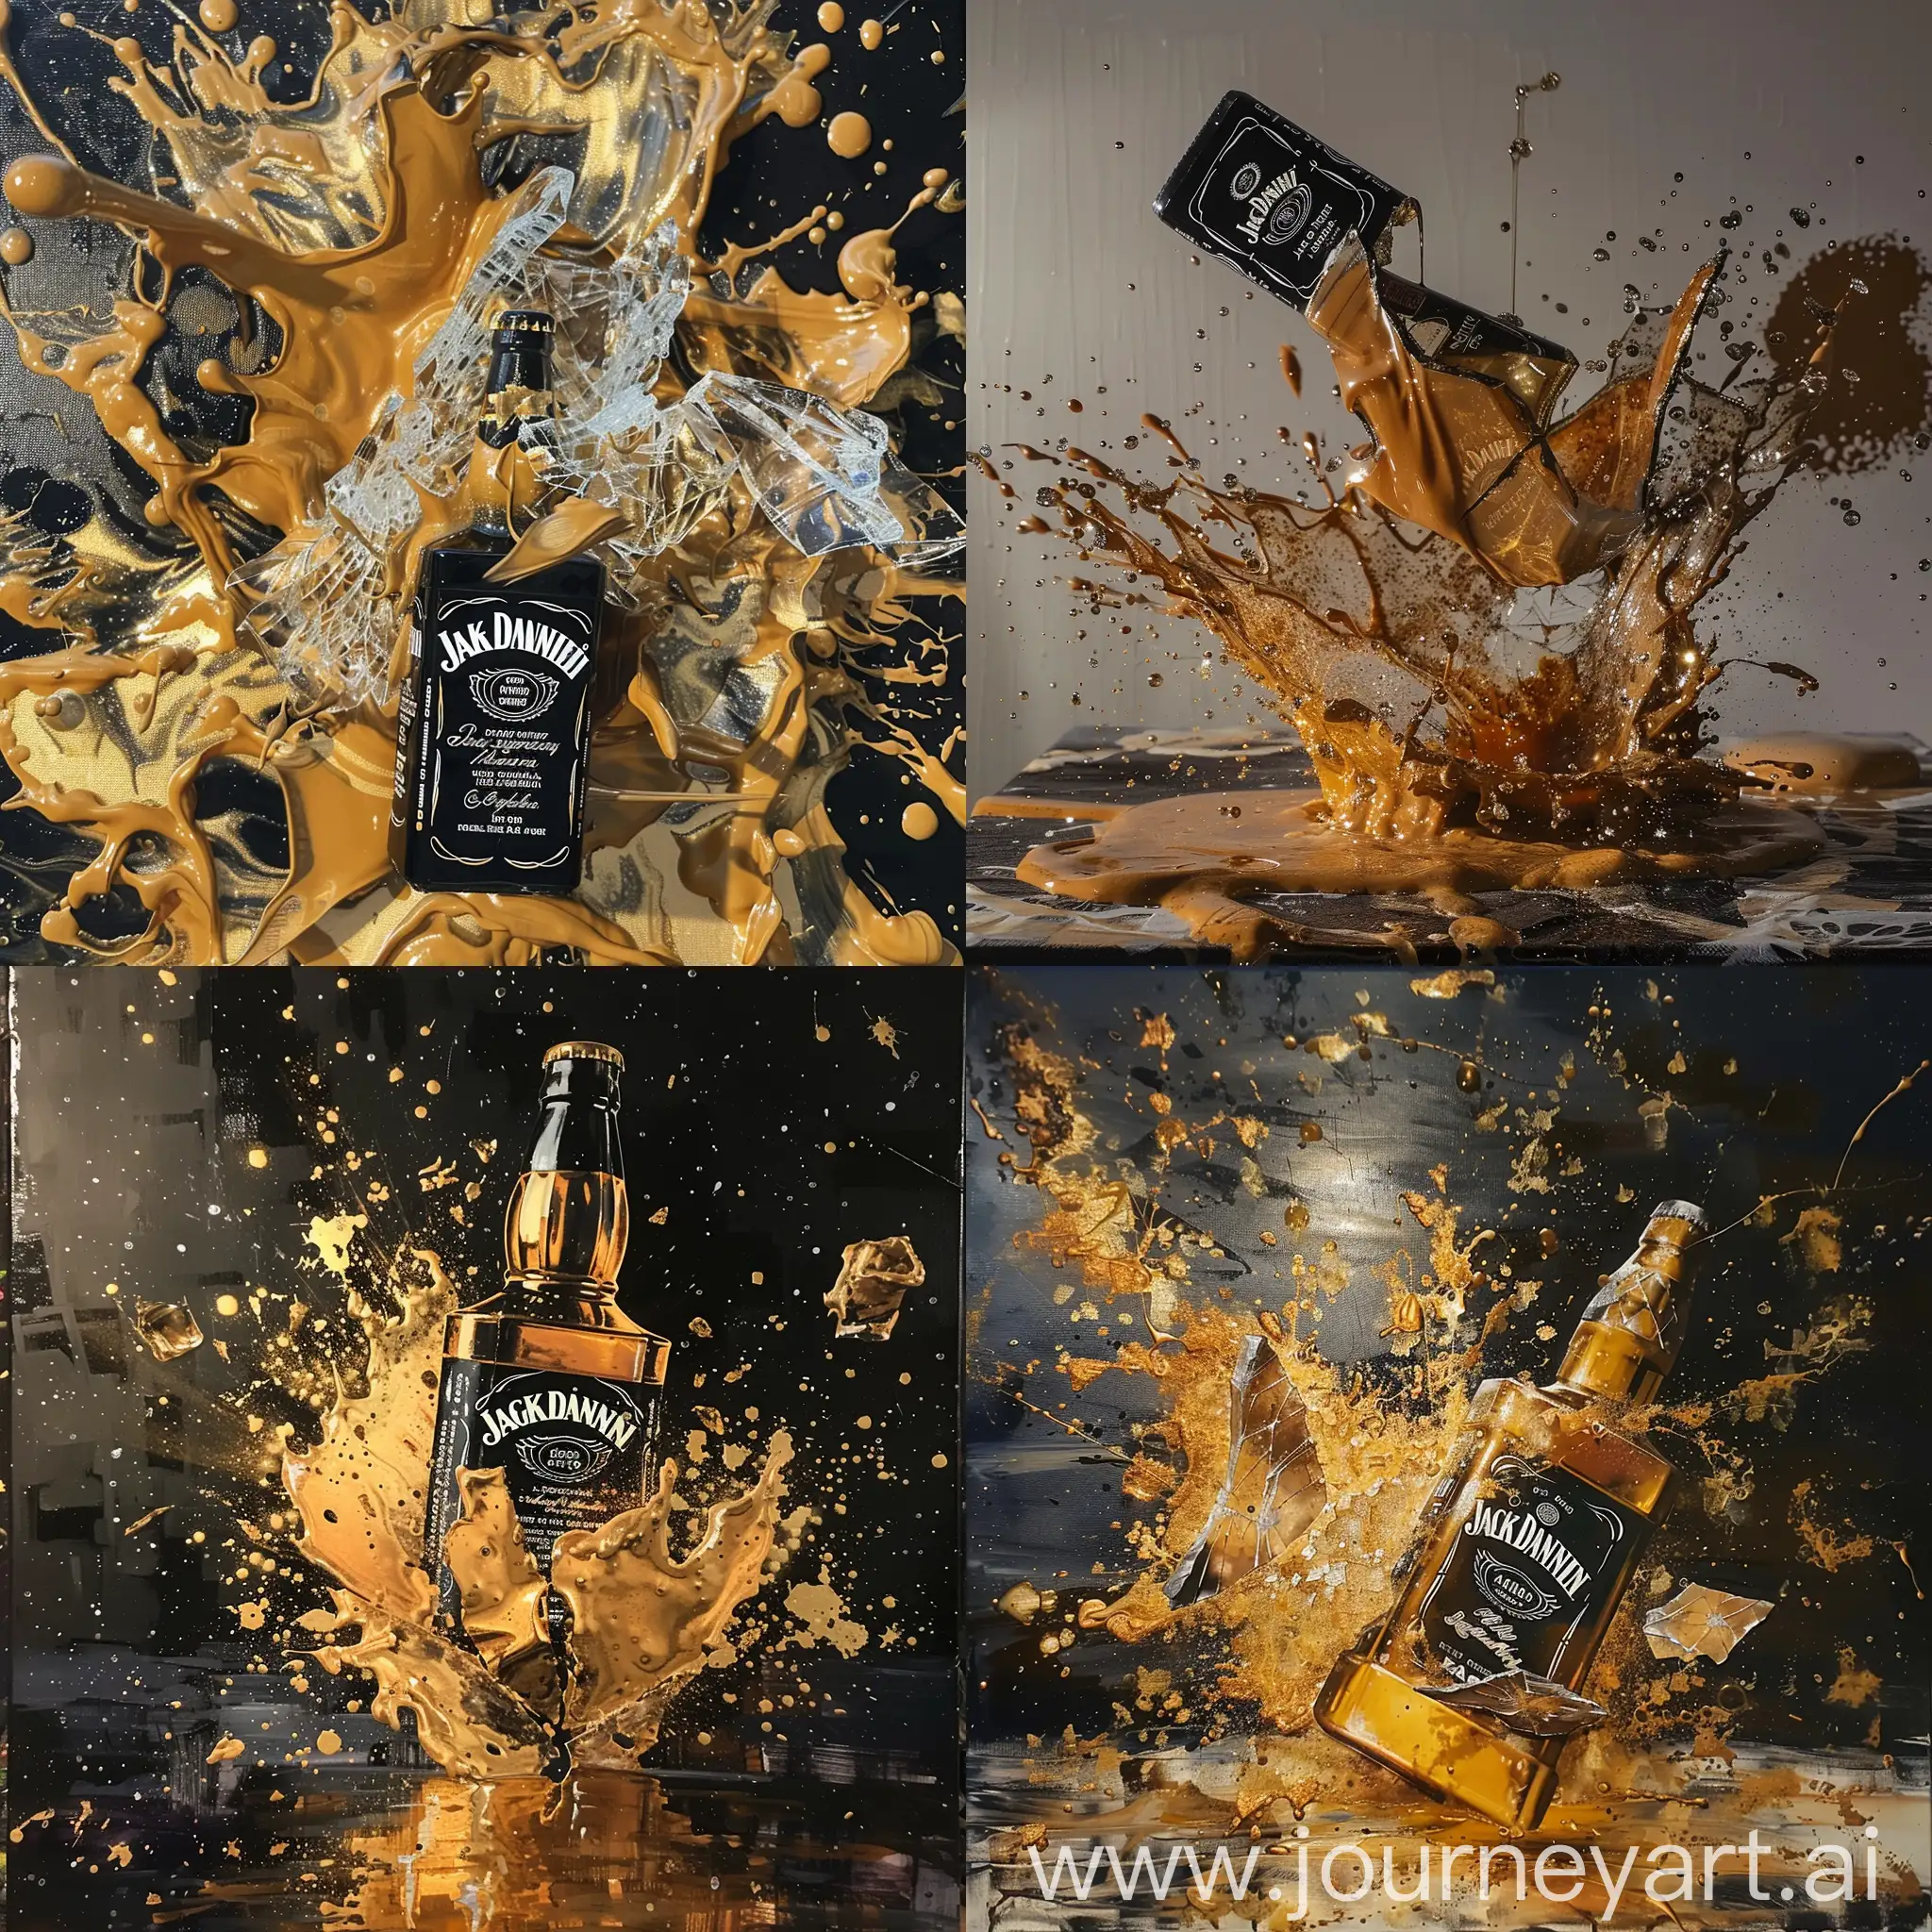 Dynamic-Artistry-Broken-Jack-Daniels-Bottle-in-Golden-Epoxy-Explosion